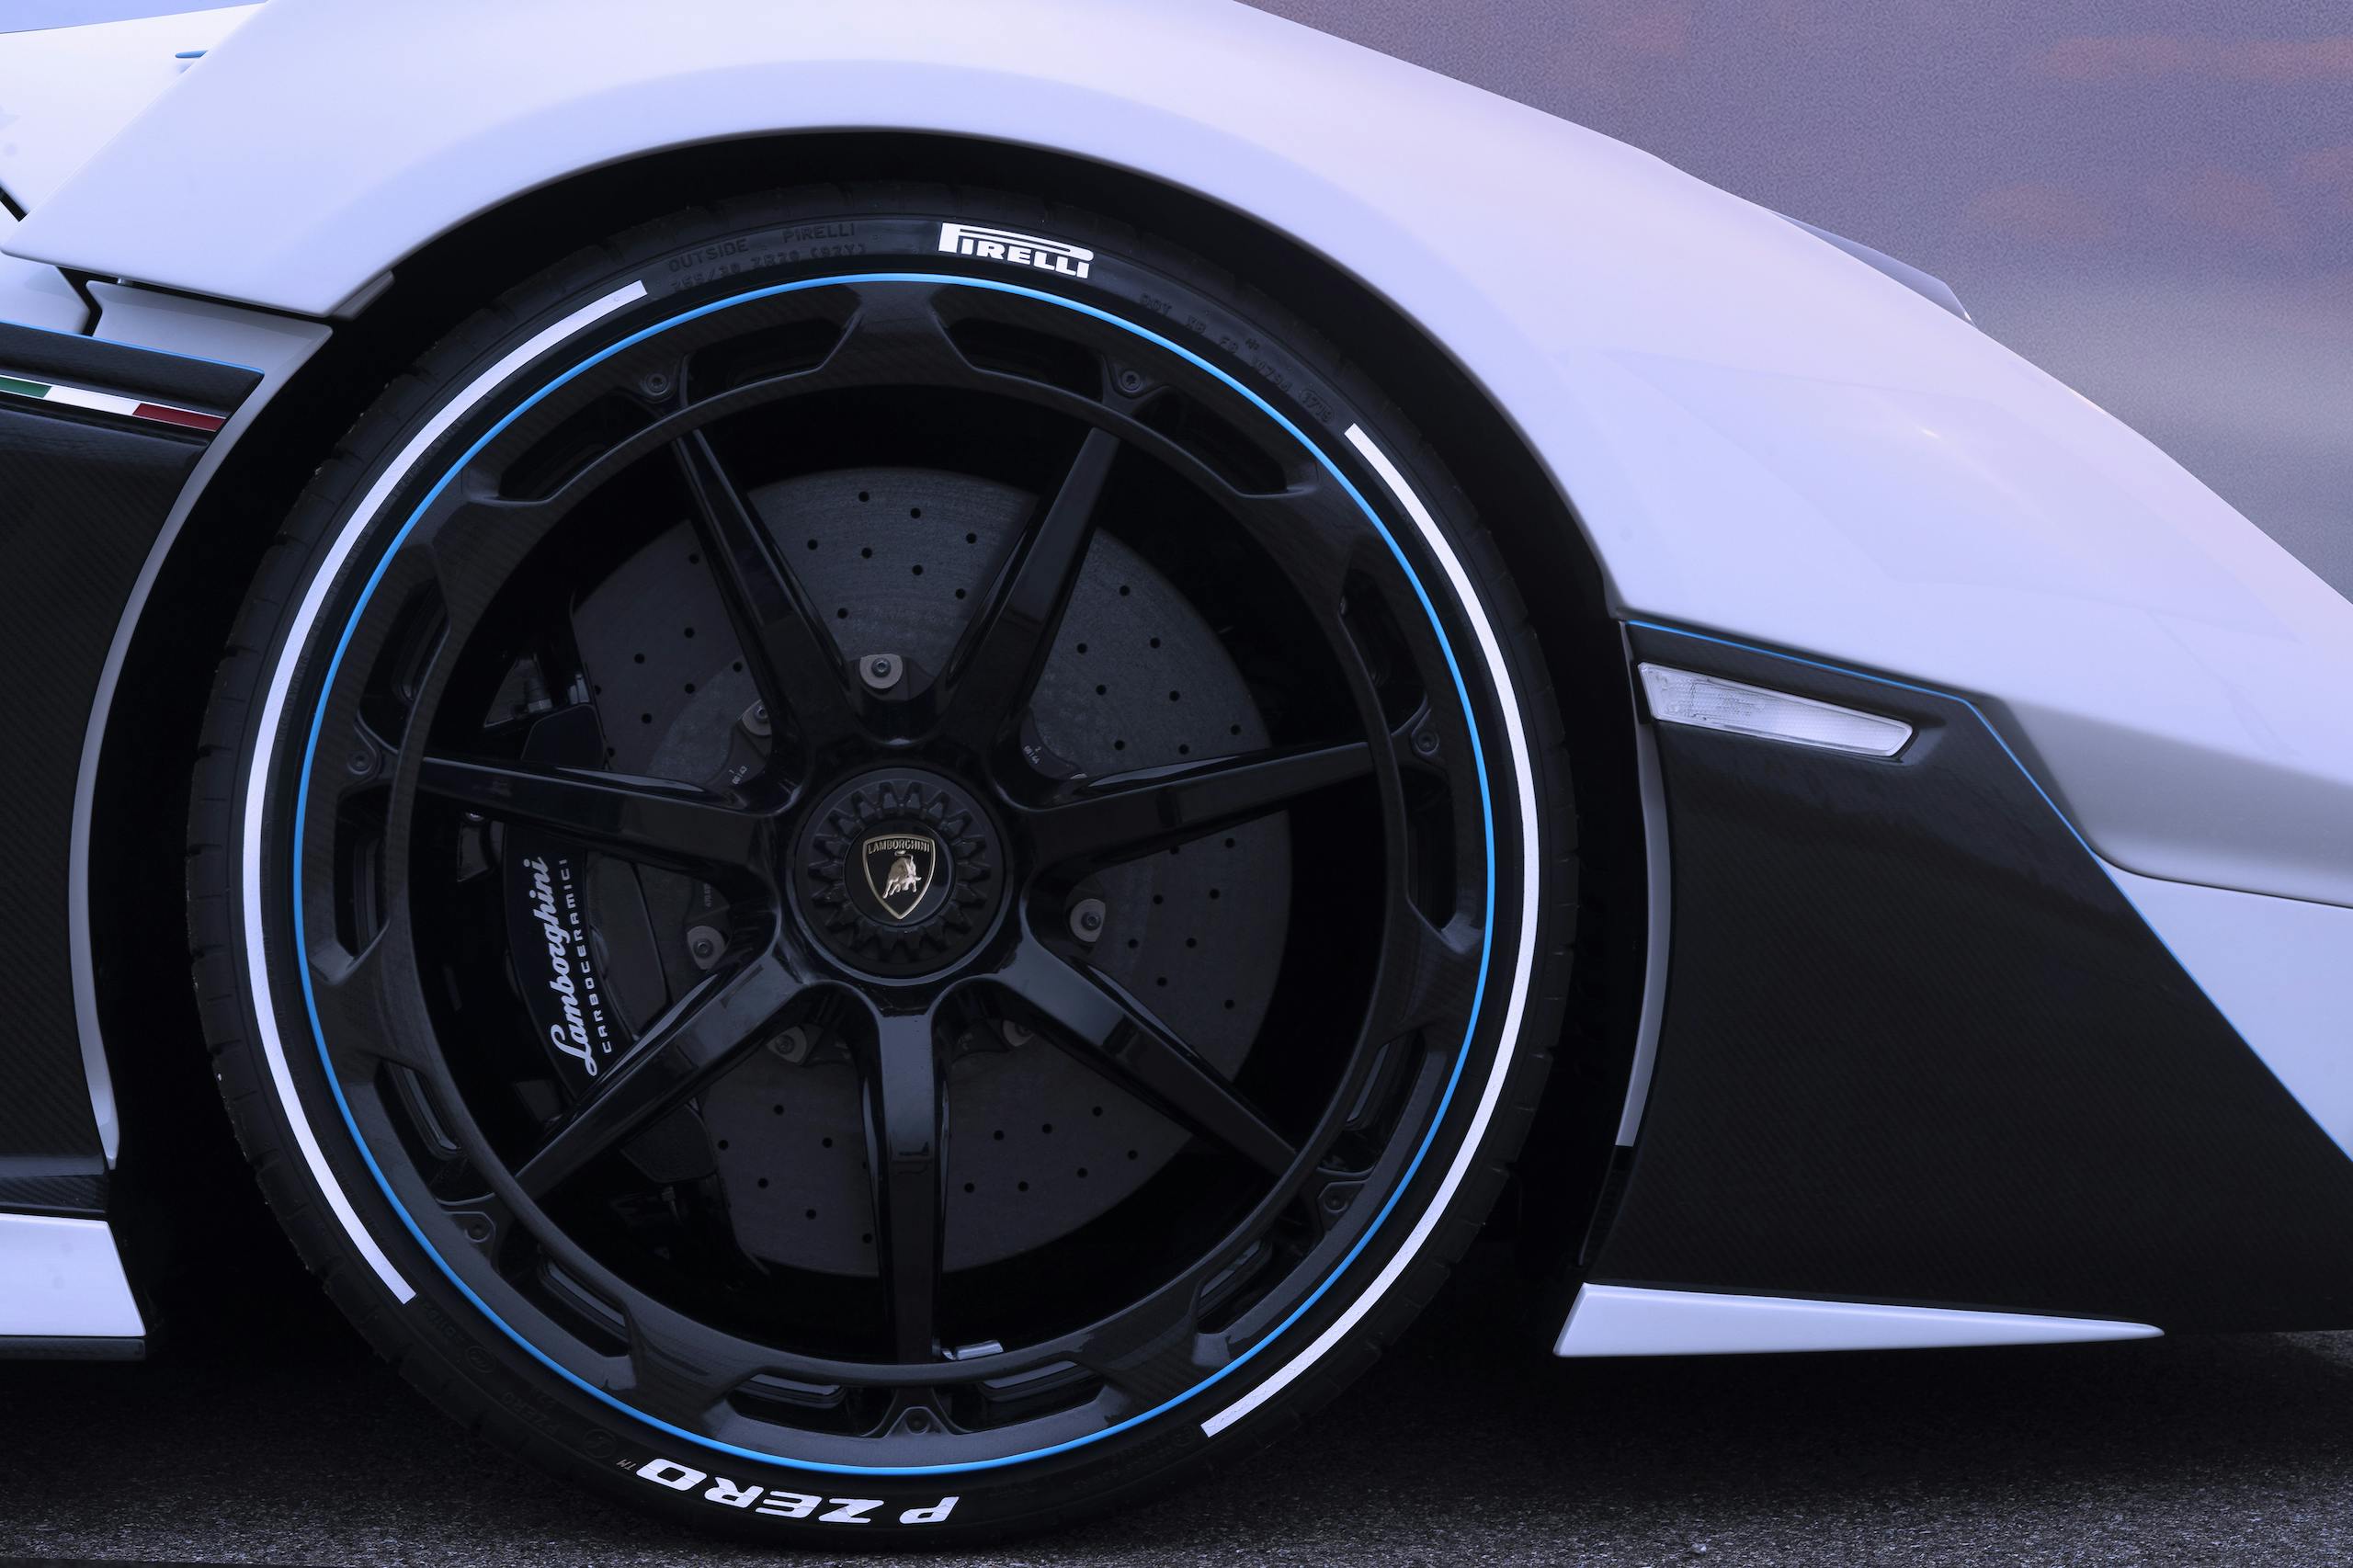 Lamborghini SC20 wheel and tire